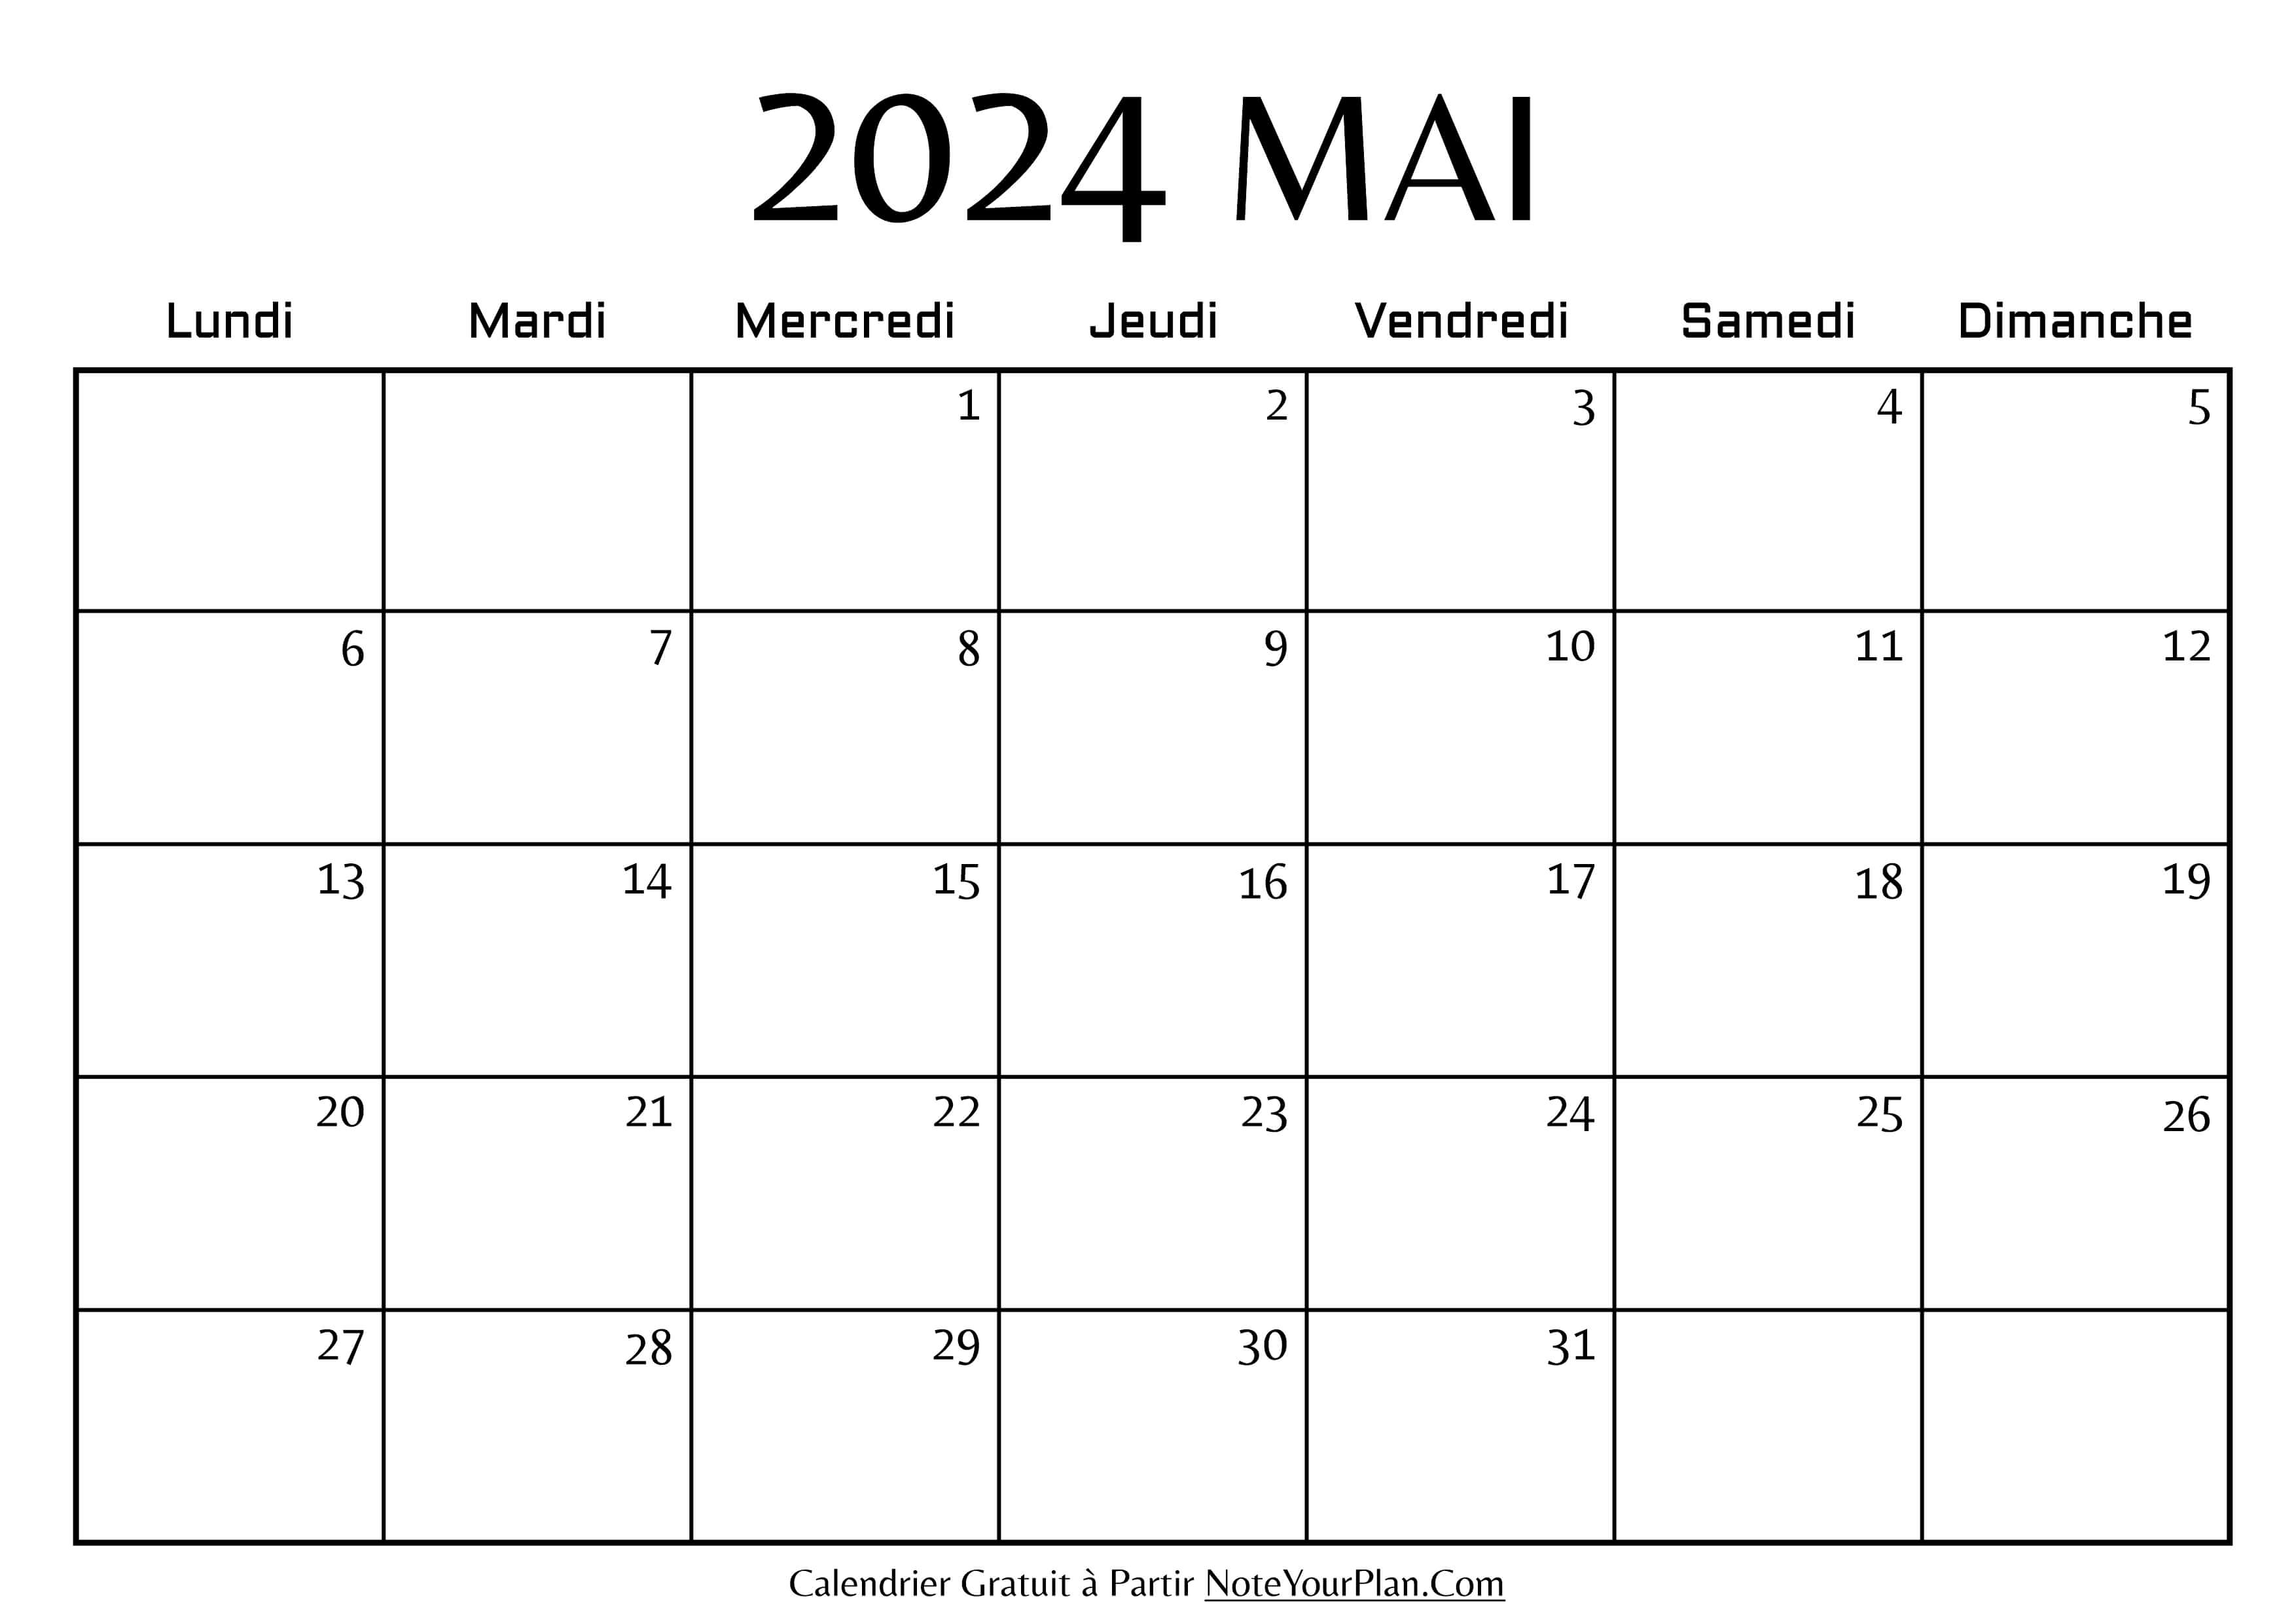 Calendrier de Mai 2024